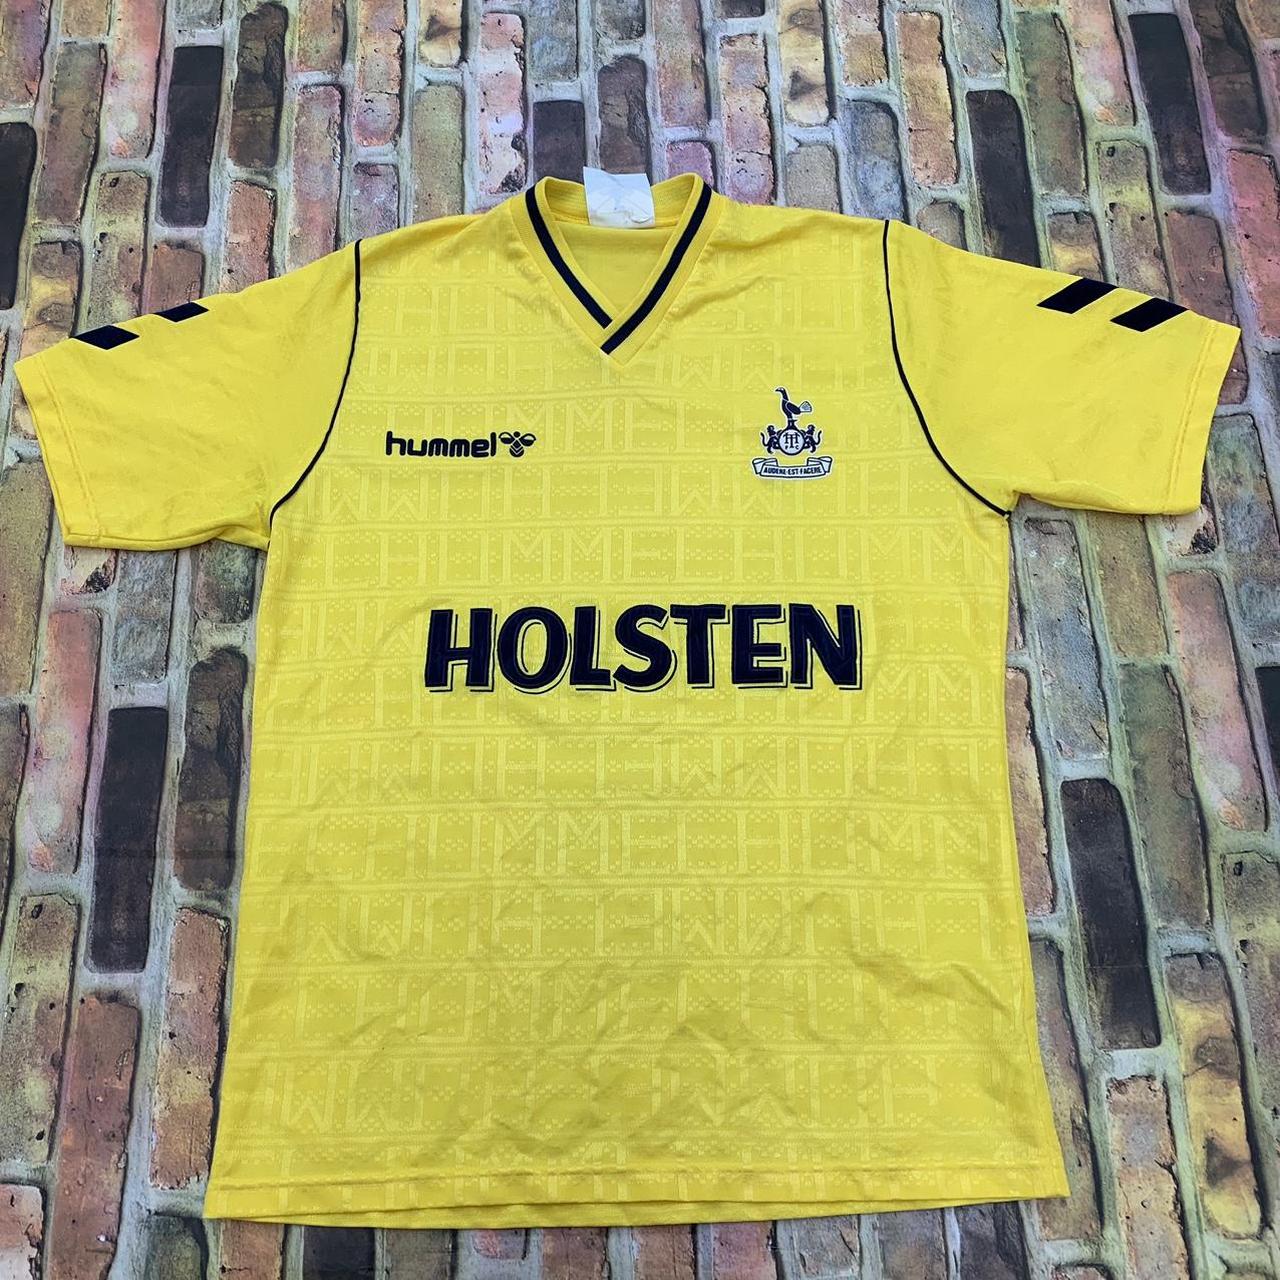 Vintage Hummel Tottenham Hotspur soccer jersey in... - Depop